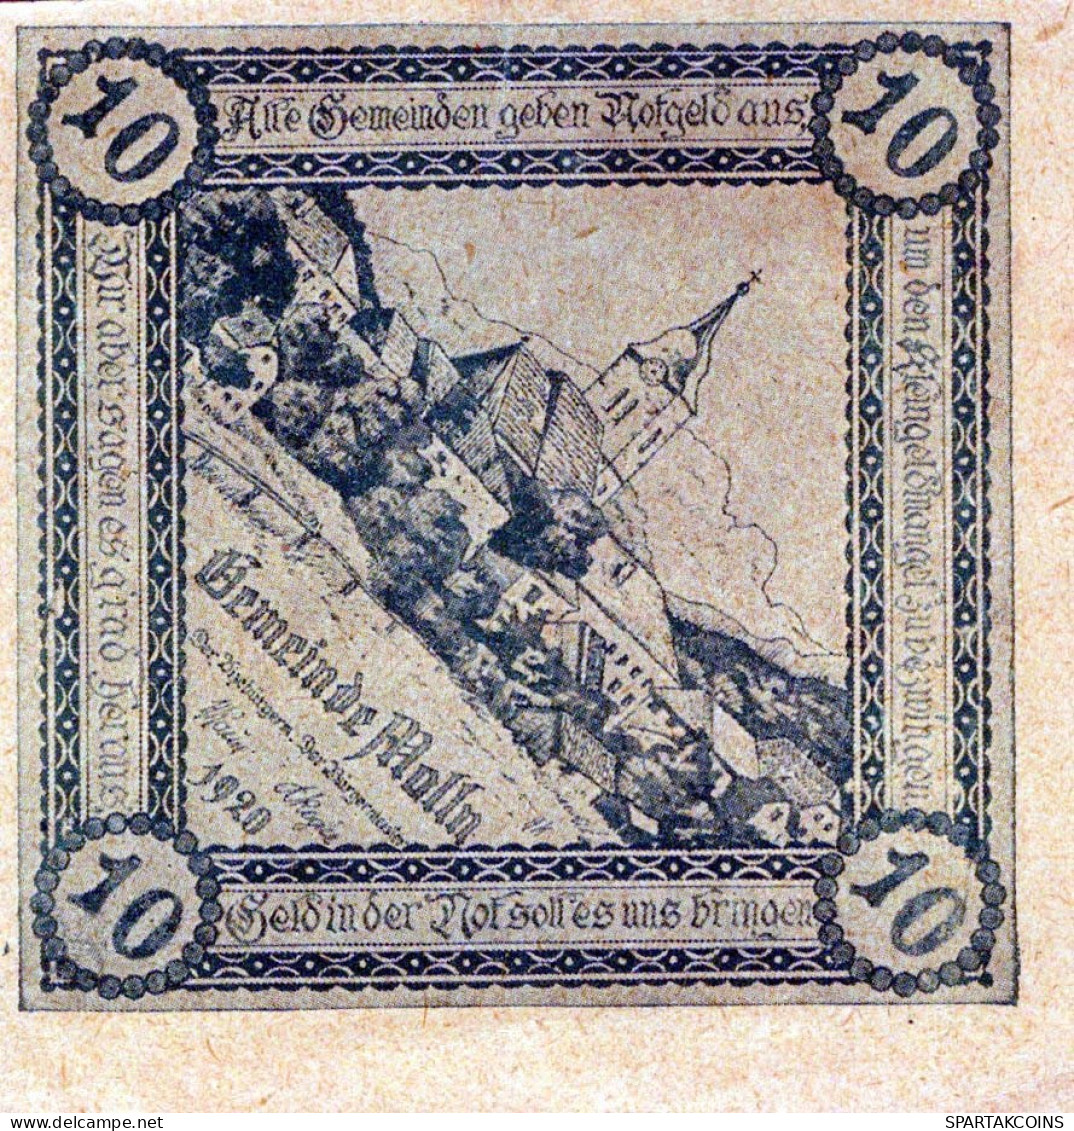 10 HELLER 1920 Stadt MOLLN Oberösterreich Österreich Notgeld Banknote #PD831 - [11] Lokale Uitgaven